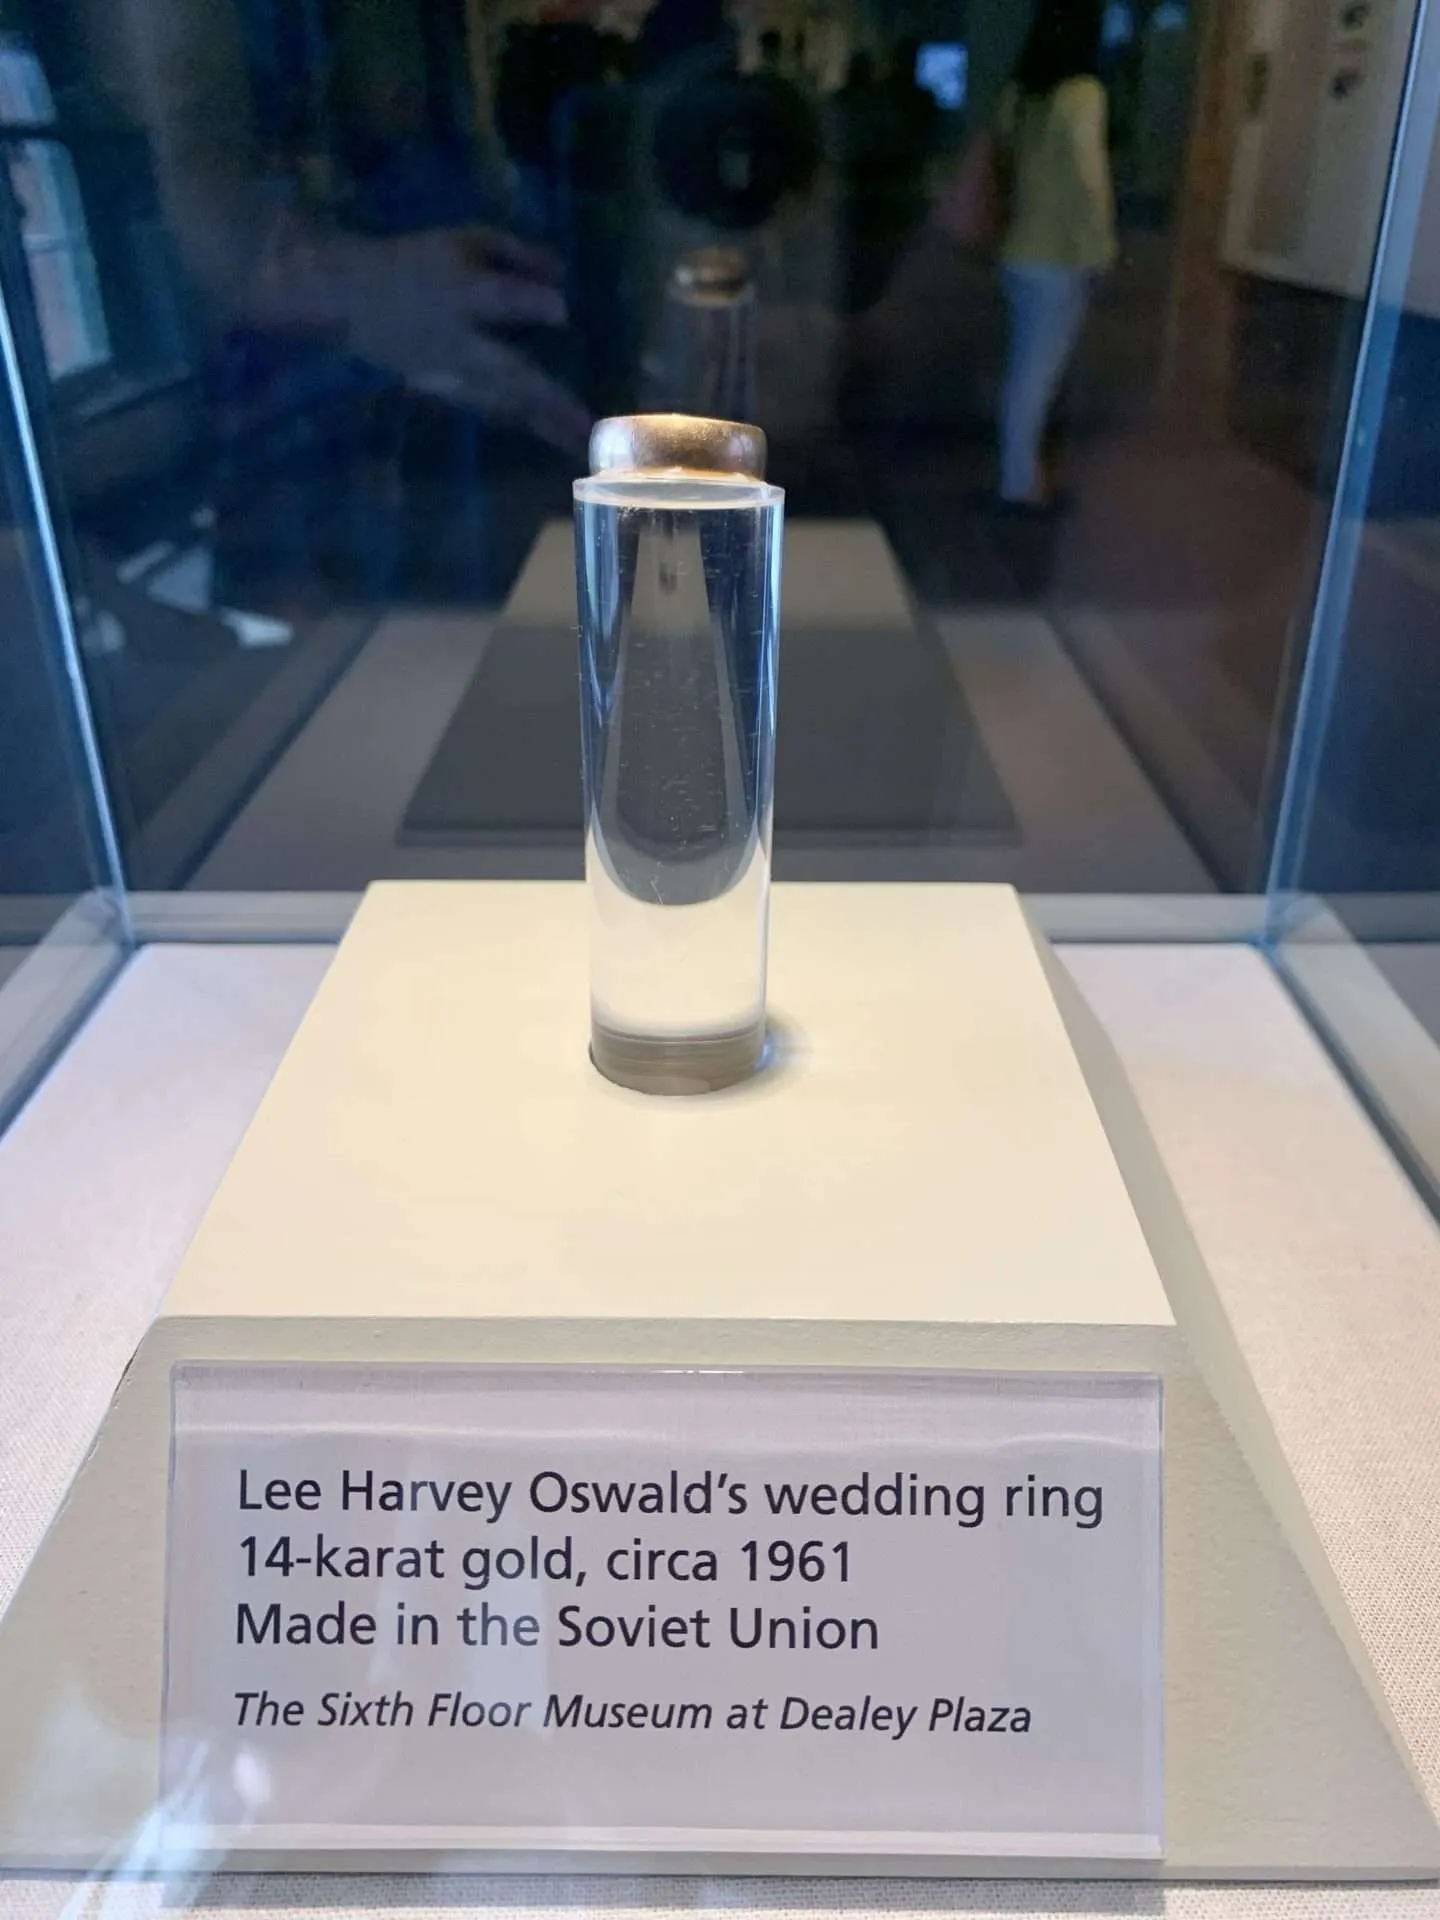 Lee Harvey Oswald's wedding ring.